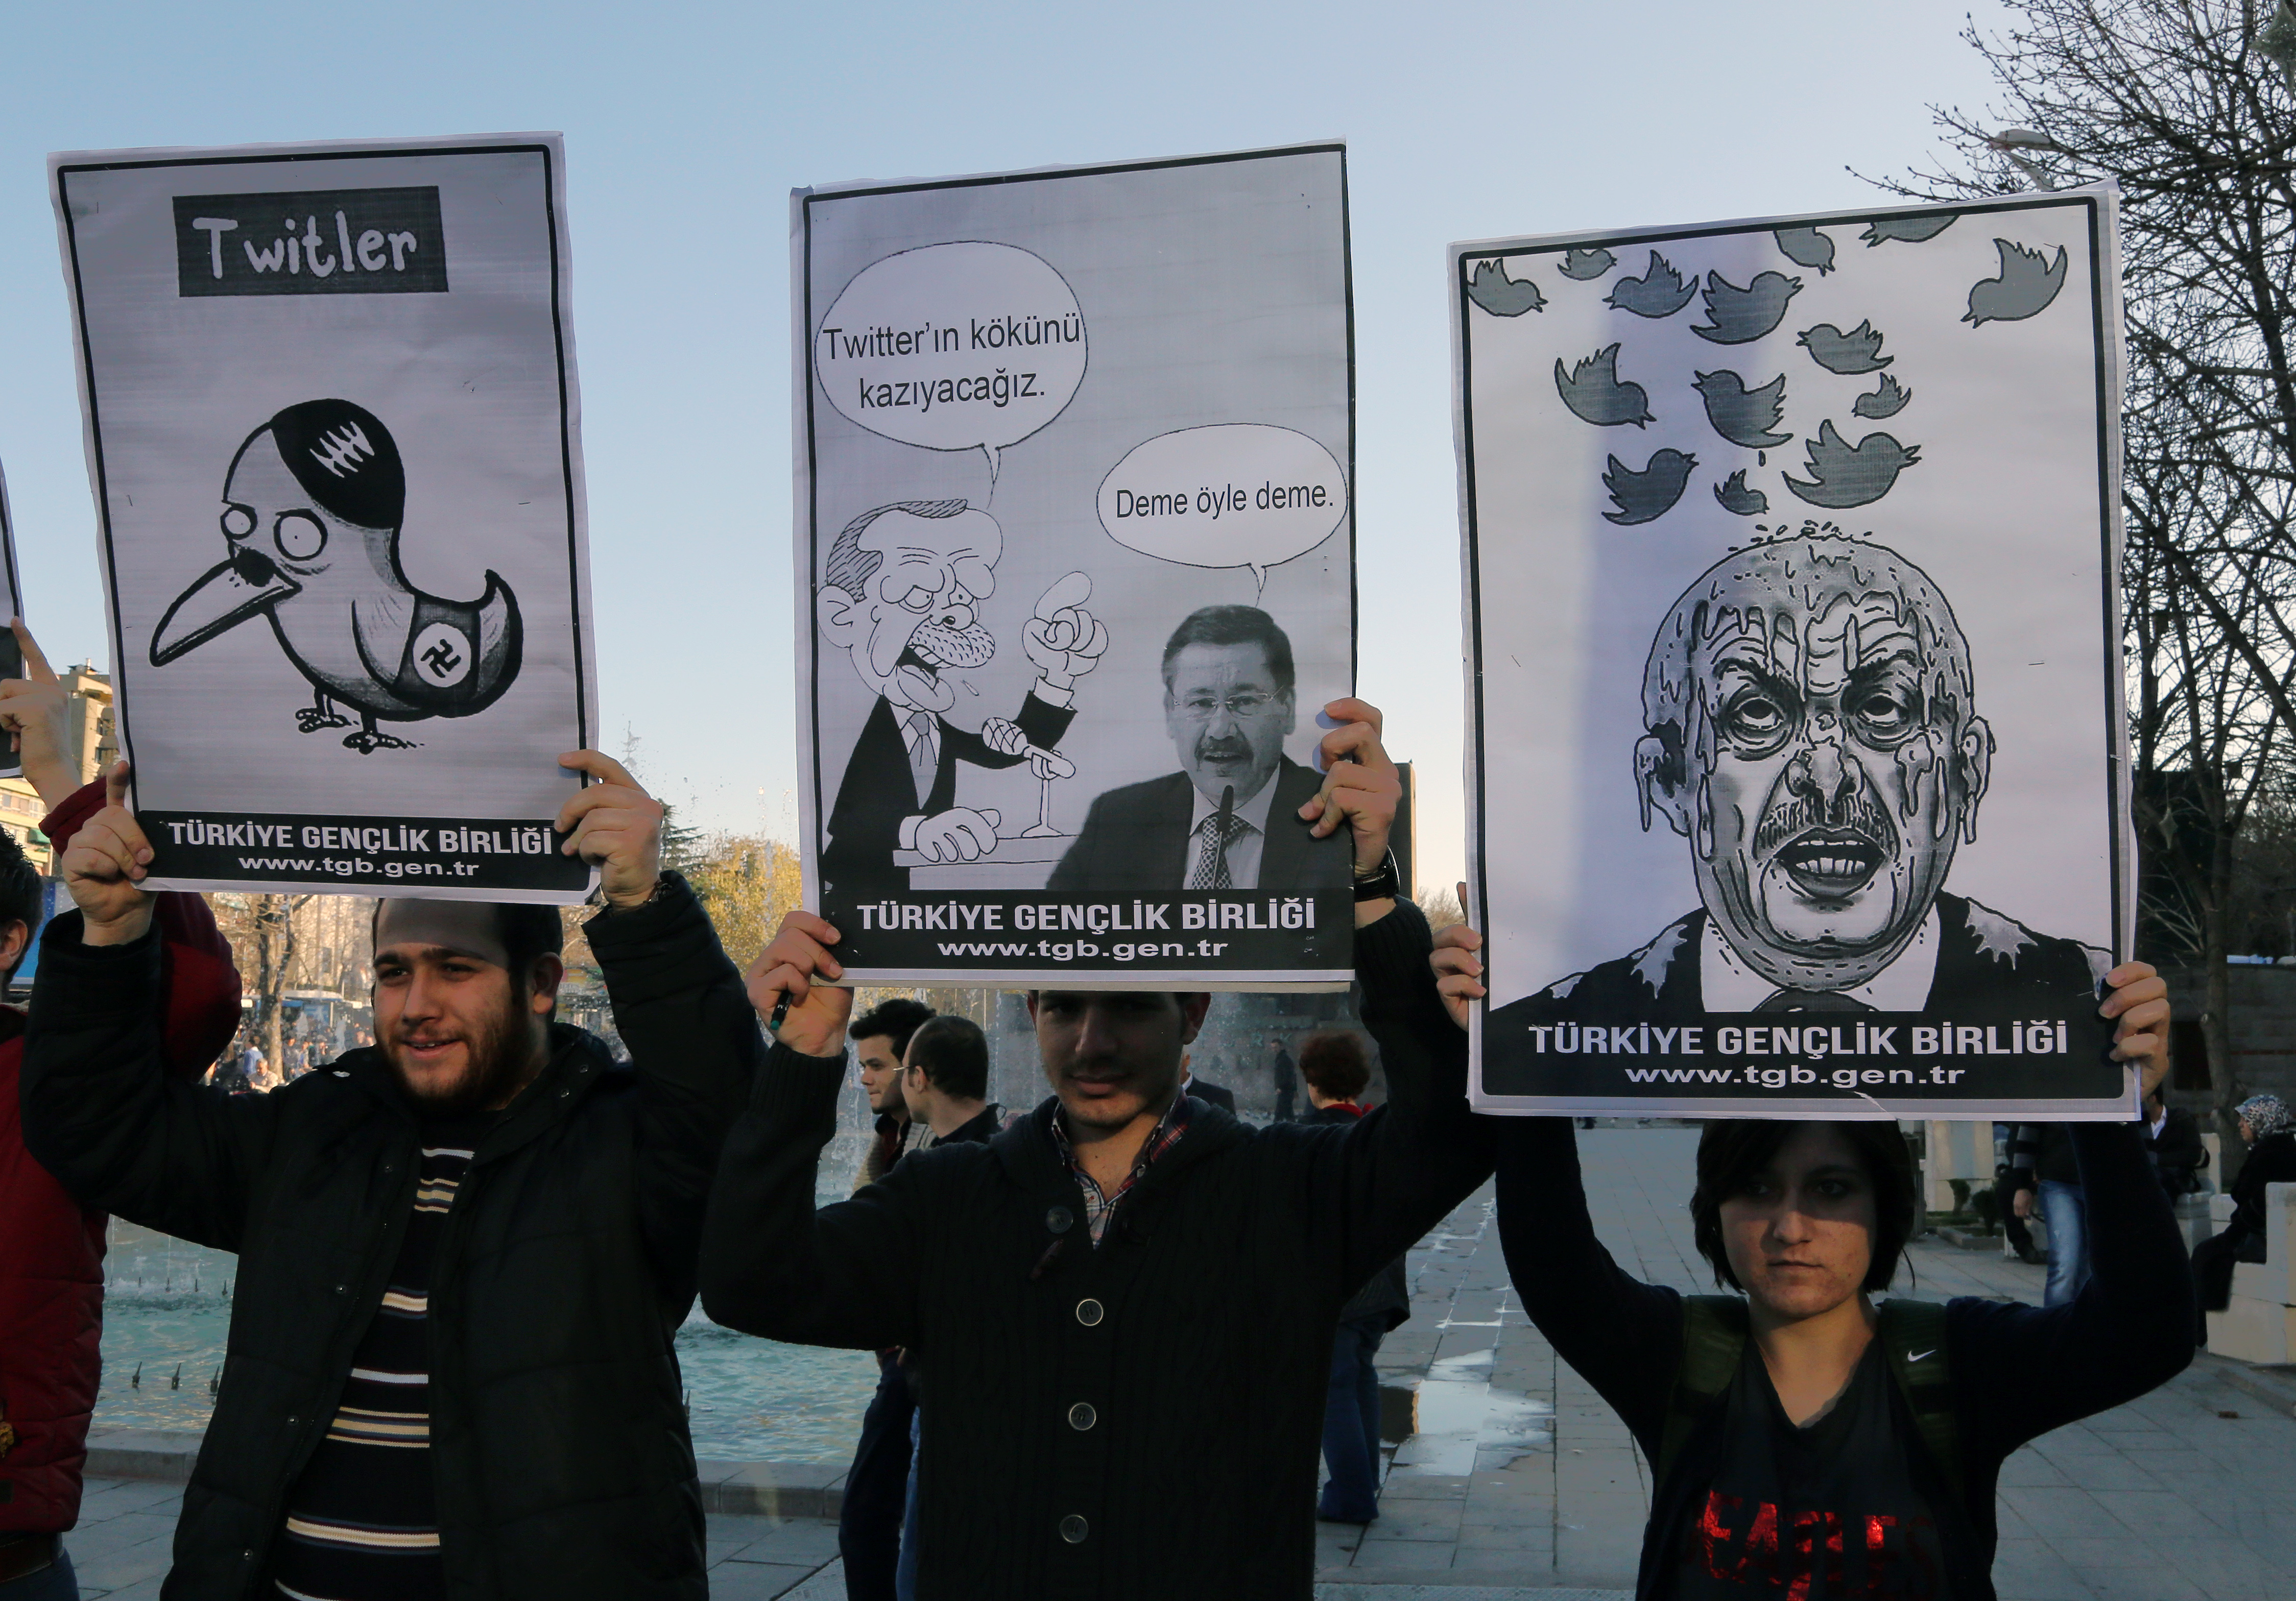 Des membres de l’Union de la jeunesse de Turquie brandissent des dessins montrant le Premier ministre turc Recep Tayyip Erdogan lors d’une manifestation à Ankara contre l’interdiction de Twitter, le 21 mars 2014